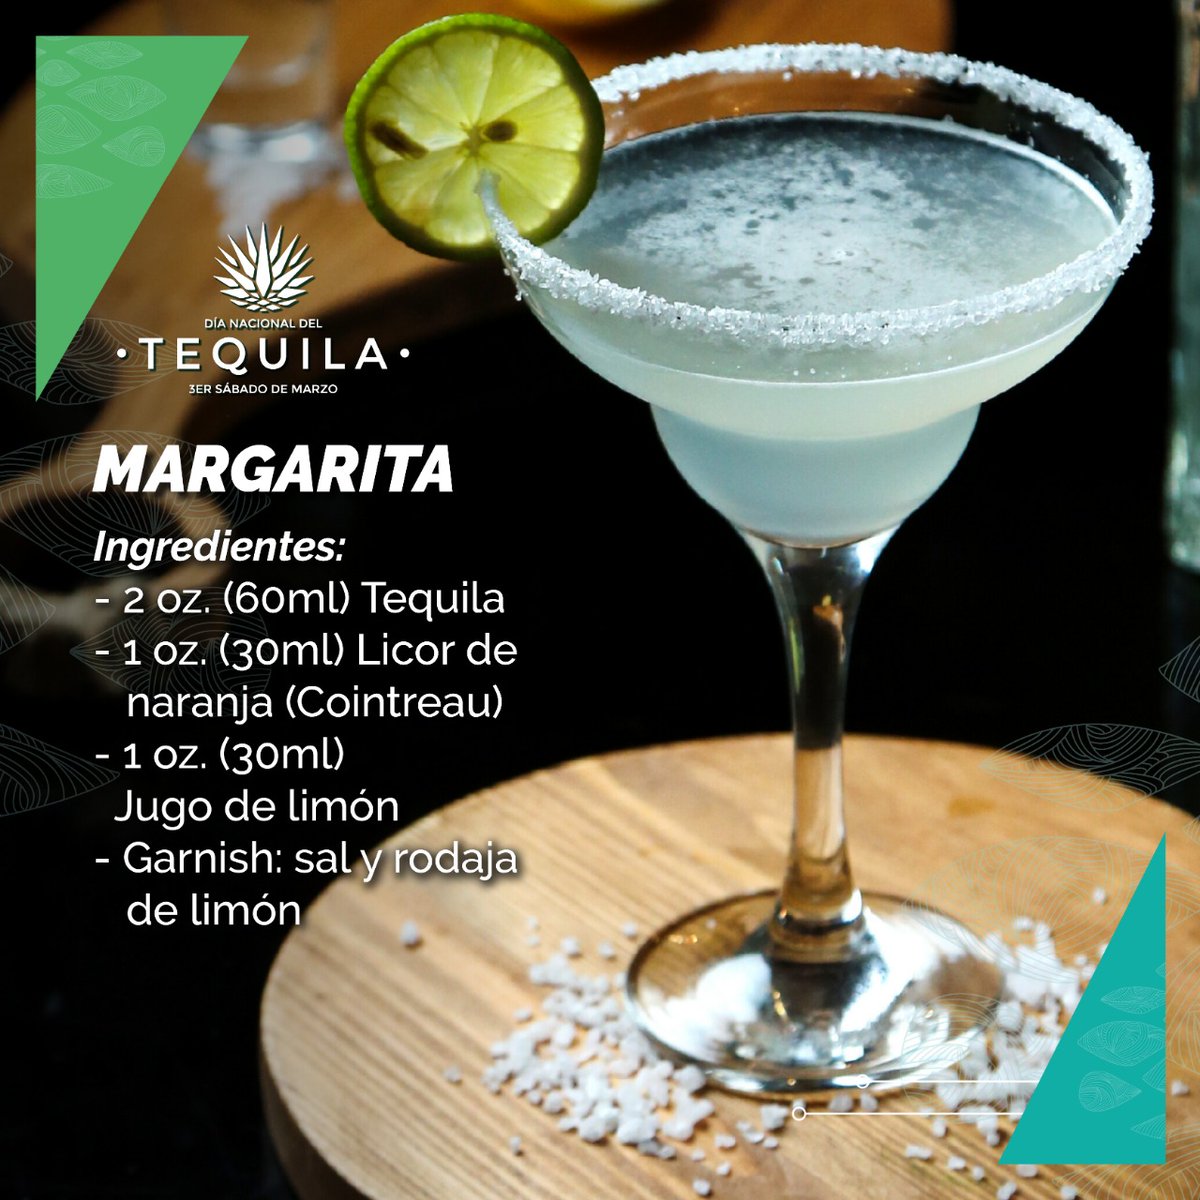 impermeable pila Treinta Día Nacional del Tequila on Twitter: "Hoy podrías preparar en casa la receta  del coctel más consumido en el mundo, la Margarita ¡Disfrútalo! MARGARITA 2  oz. (60ml) Tequila 1 oz. (30ml) Licor